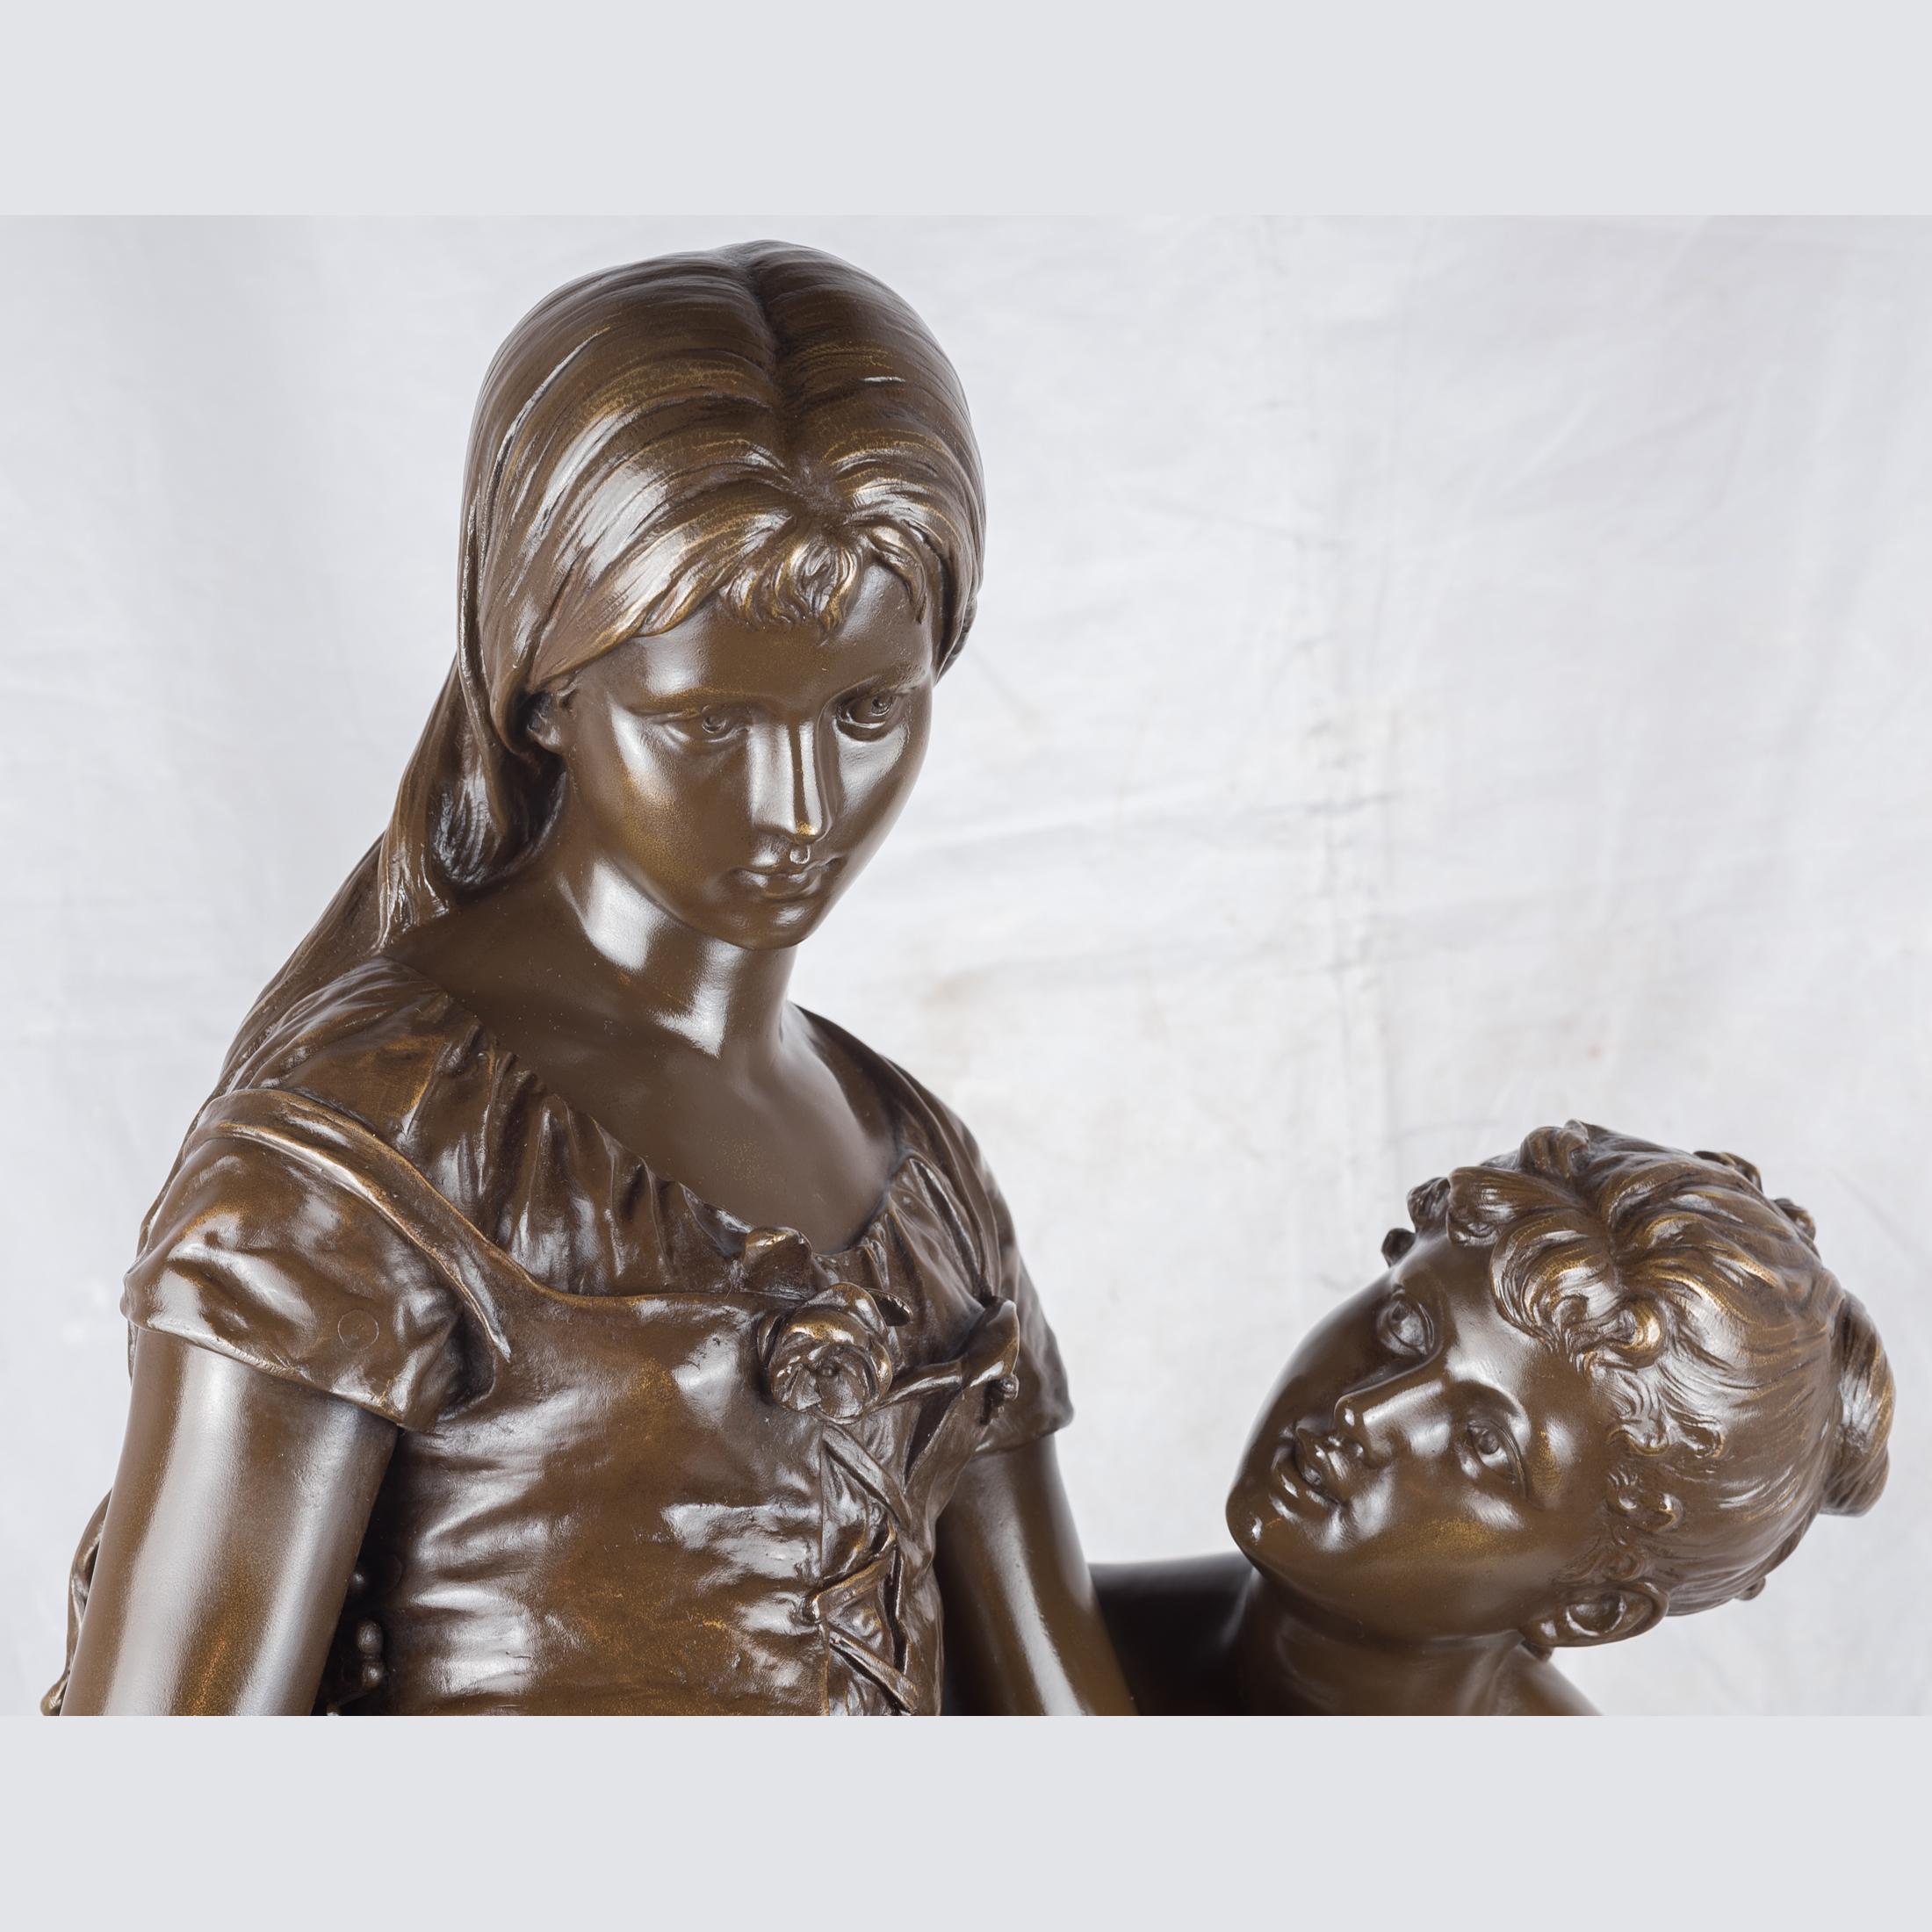 Une belle sculpture en bronze patiné de deux beautés par Hippolyte Moreau
Une femme tient une fleur debout, l'autre est assise. La base est inscrite H. Moreau, surmontée d'un socle en marbre vert. 

Artiste : Hippolyte François Moreau